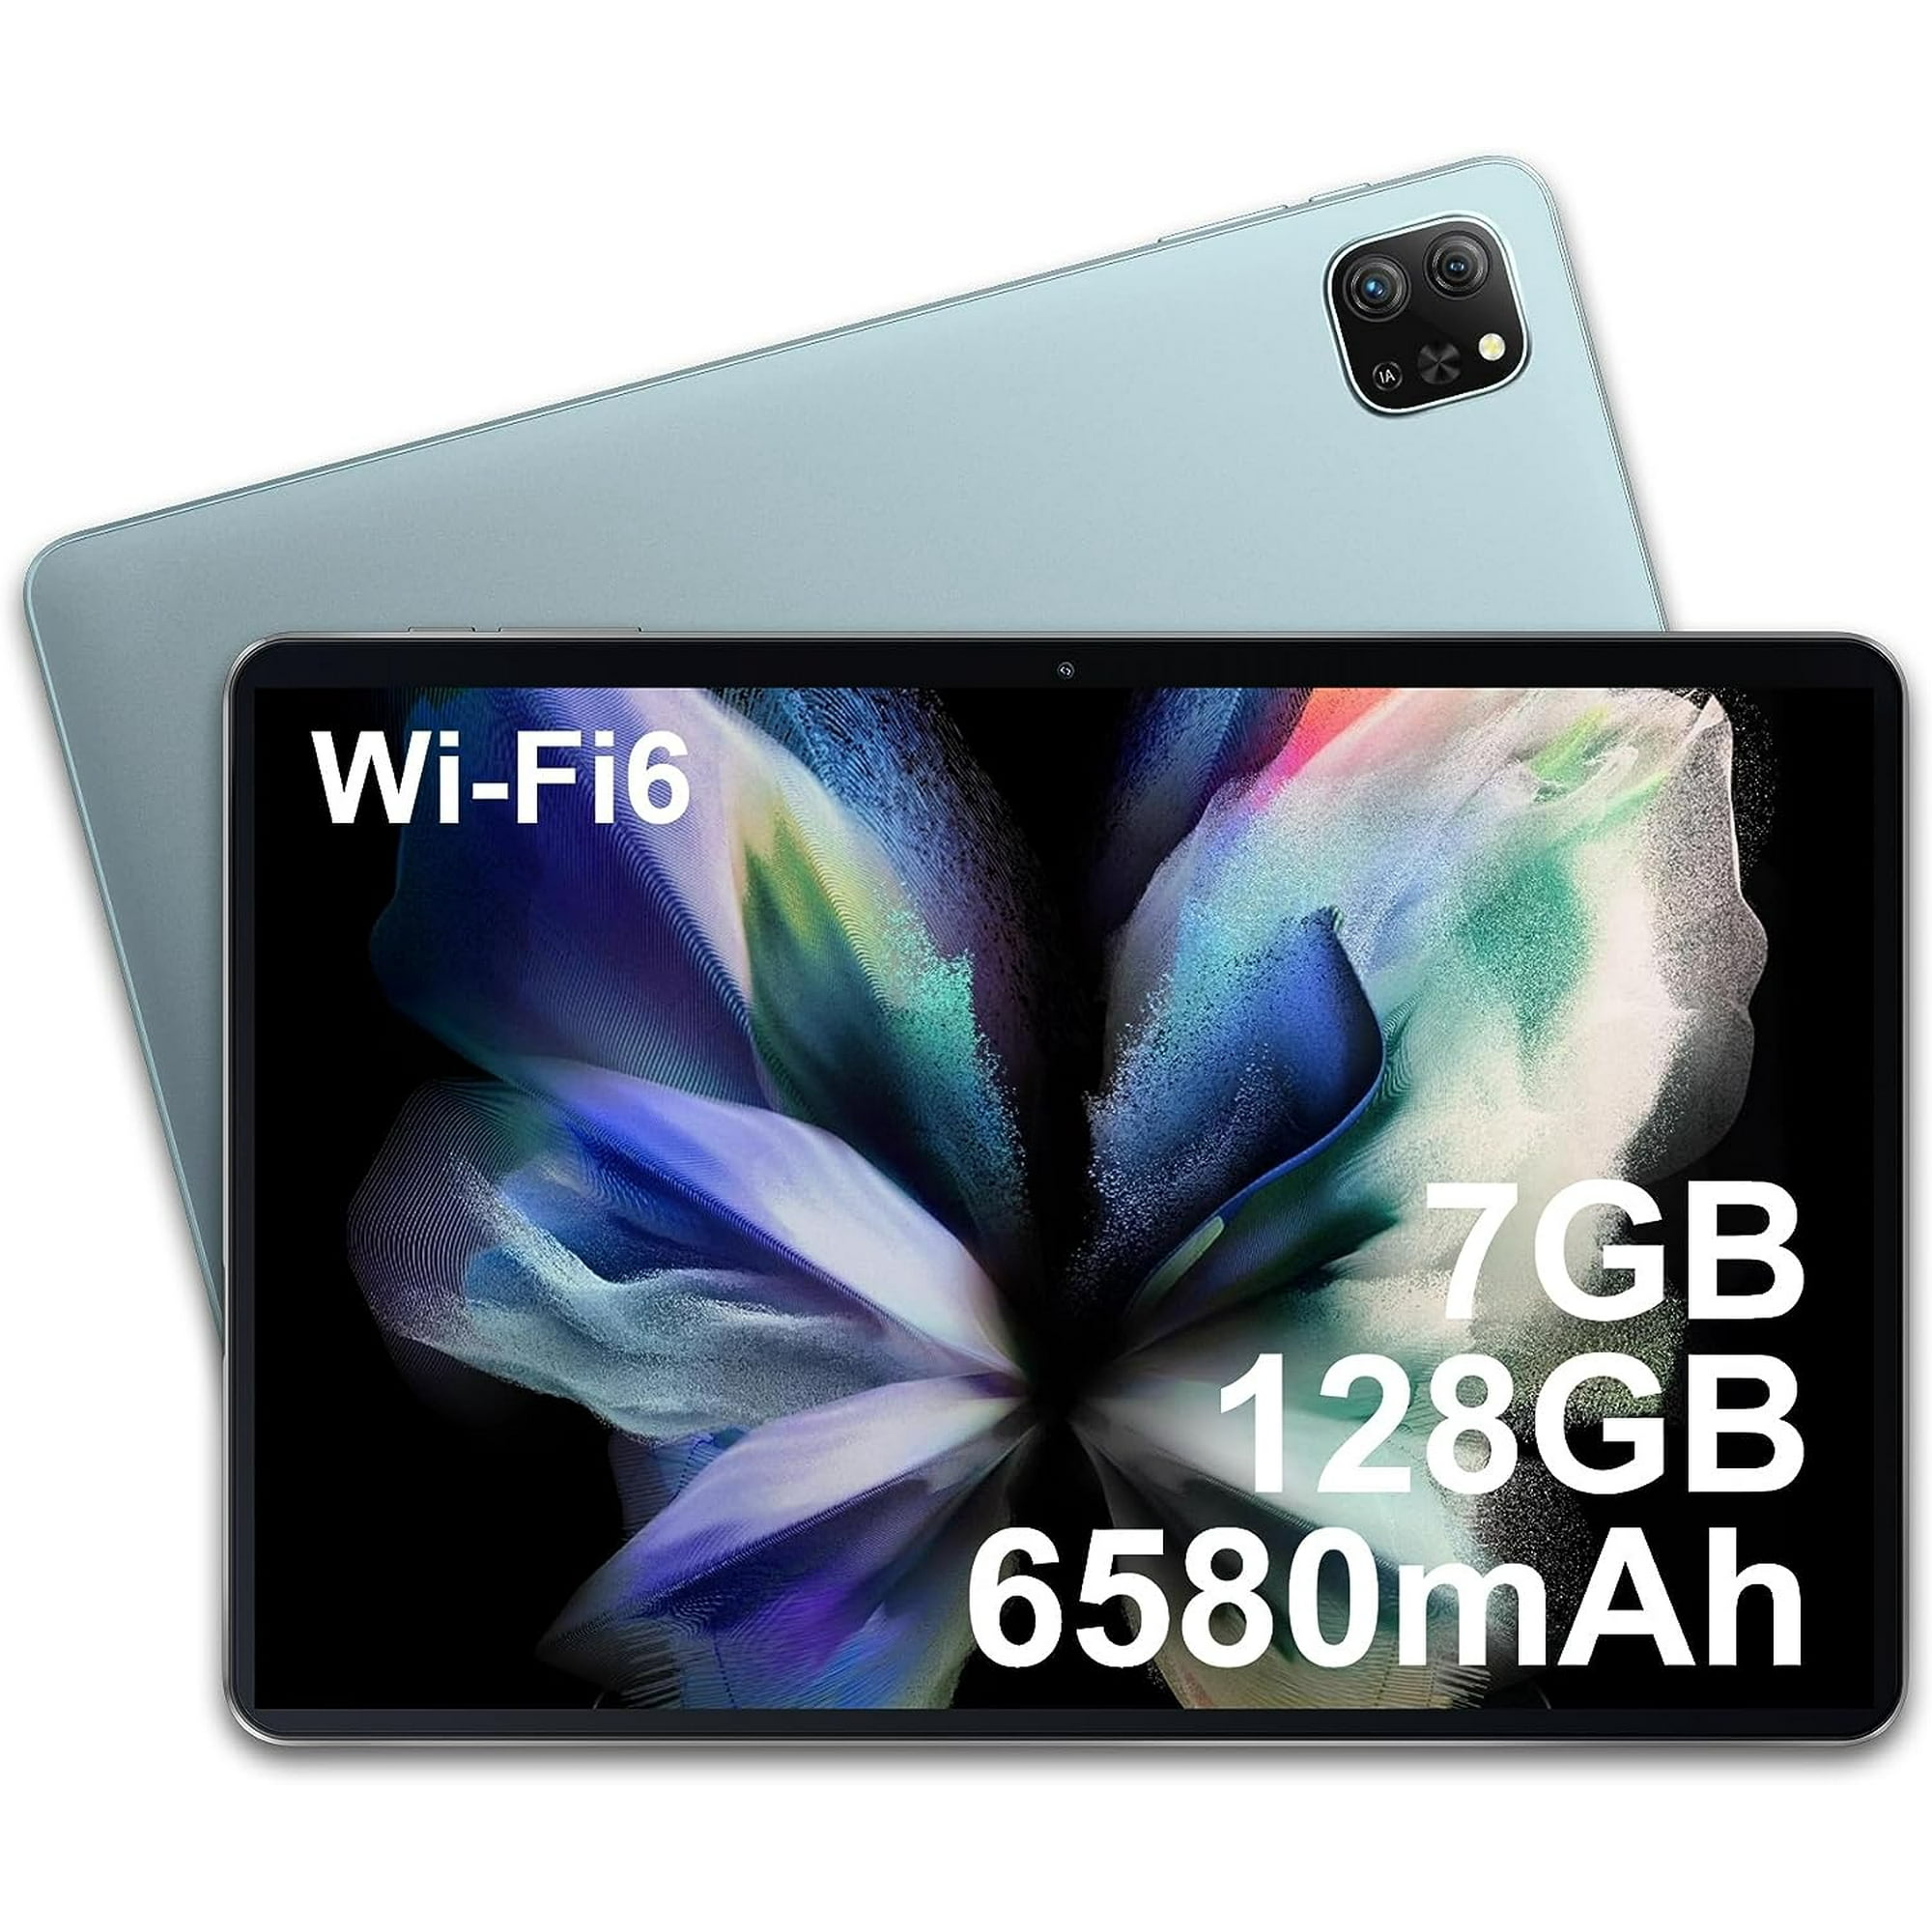 WiFi 6タブレットPAD70 10.1インチ7GB RAM+128GB